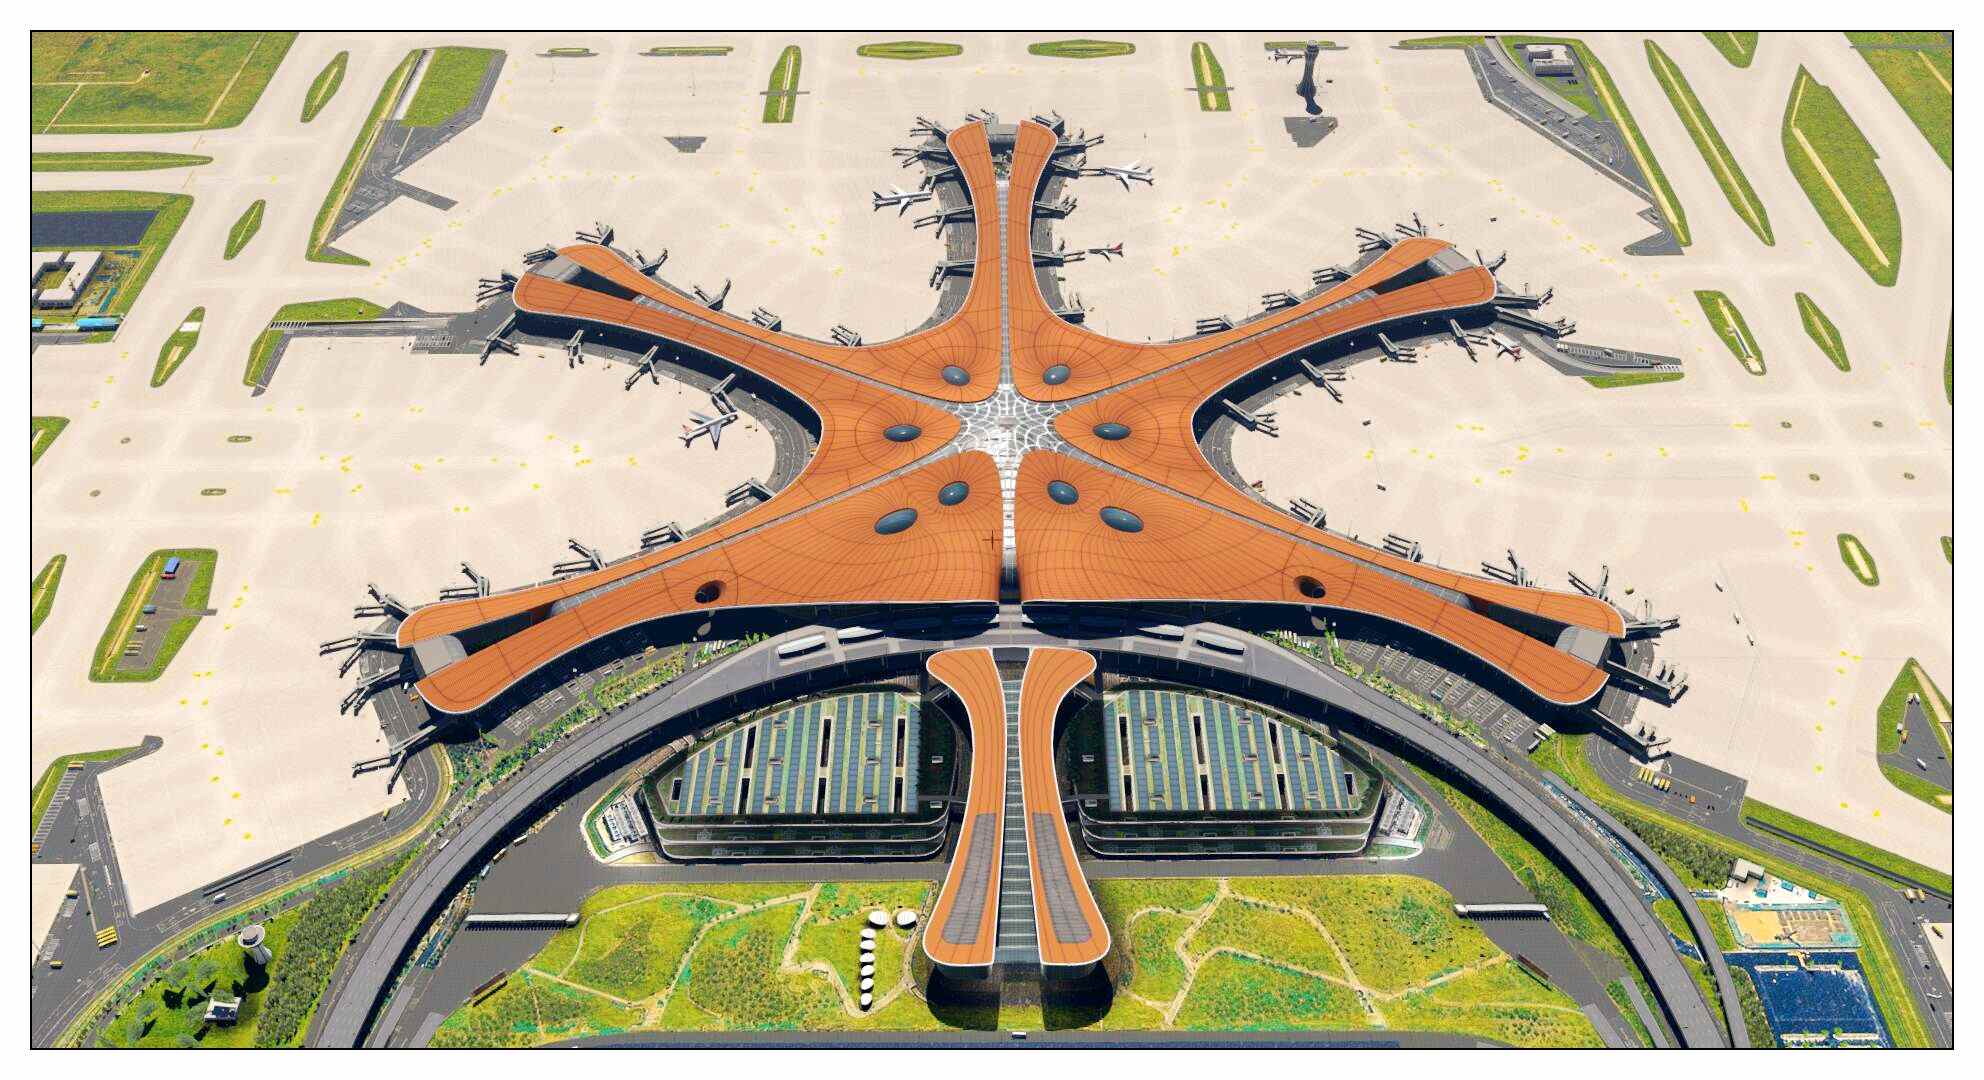 【X-Plane】ZBAD北京大兴国际机场-正式发布-8669 